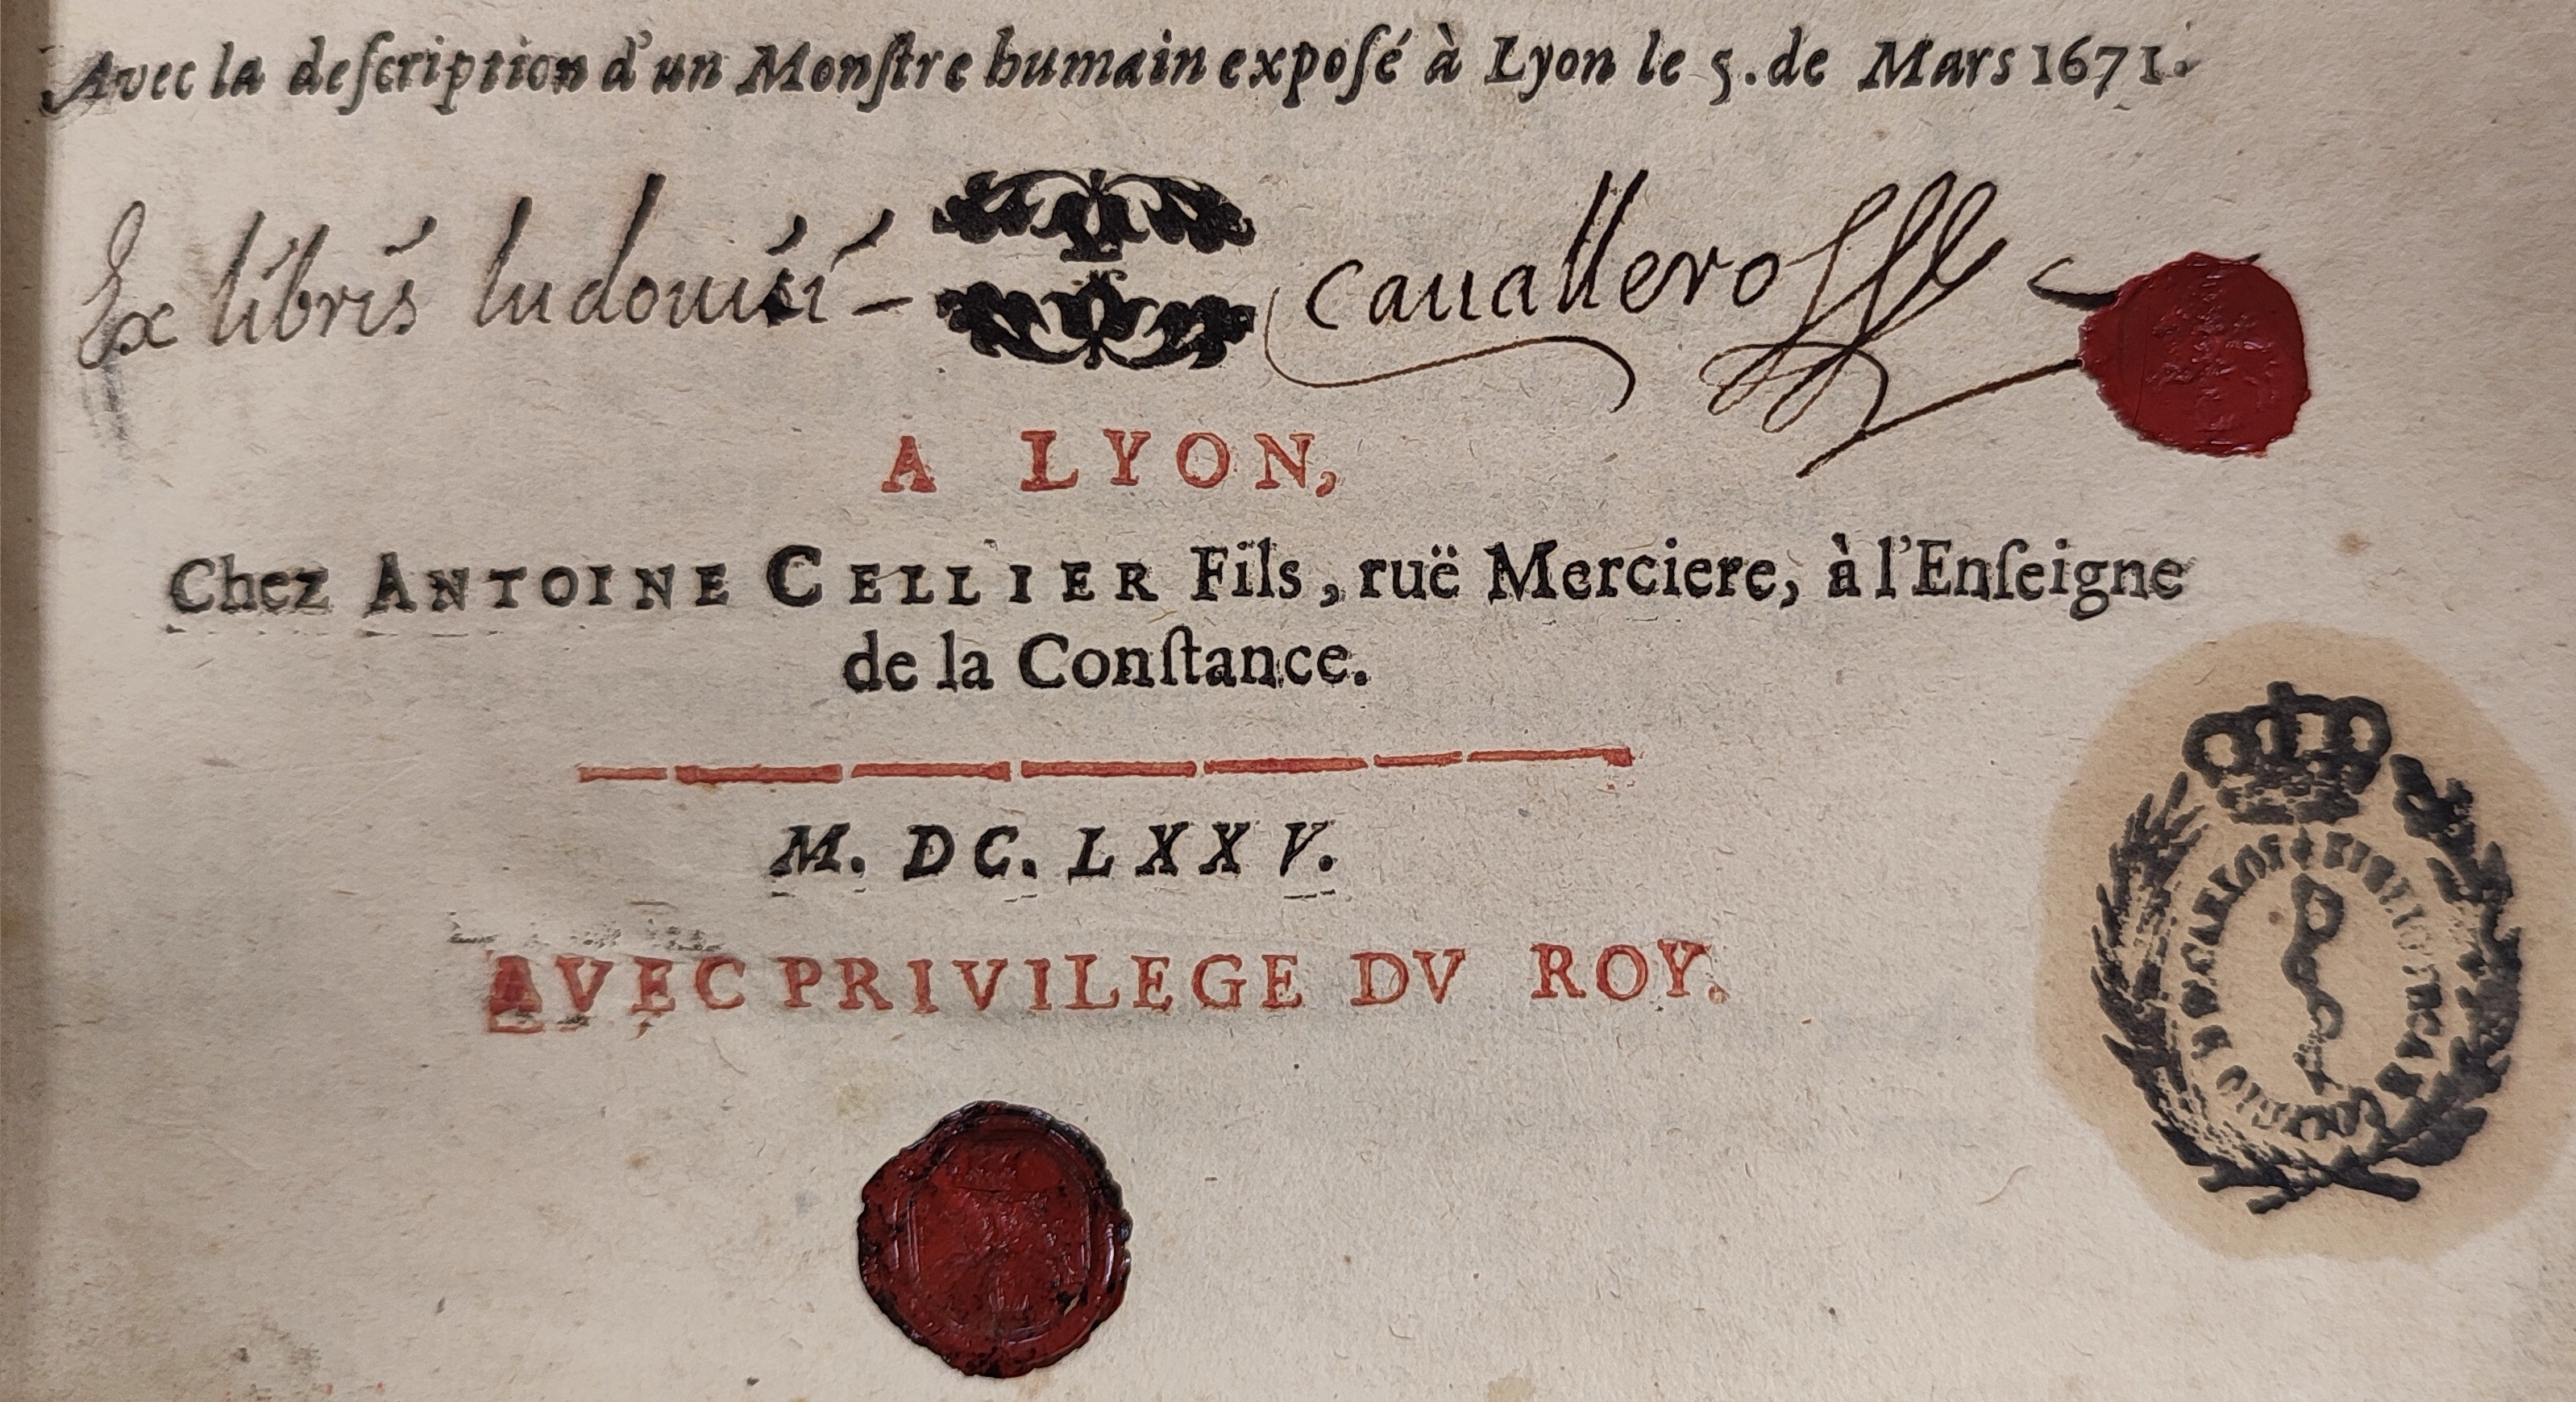 Exlibris manuscrito y sello de lacre